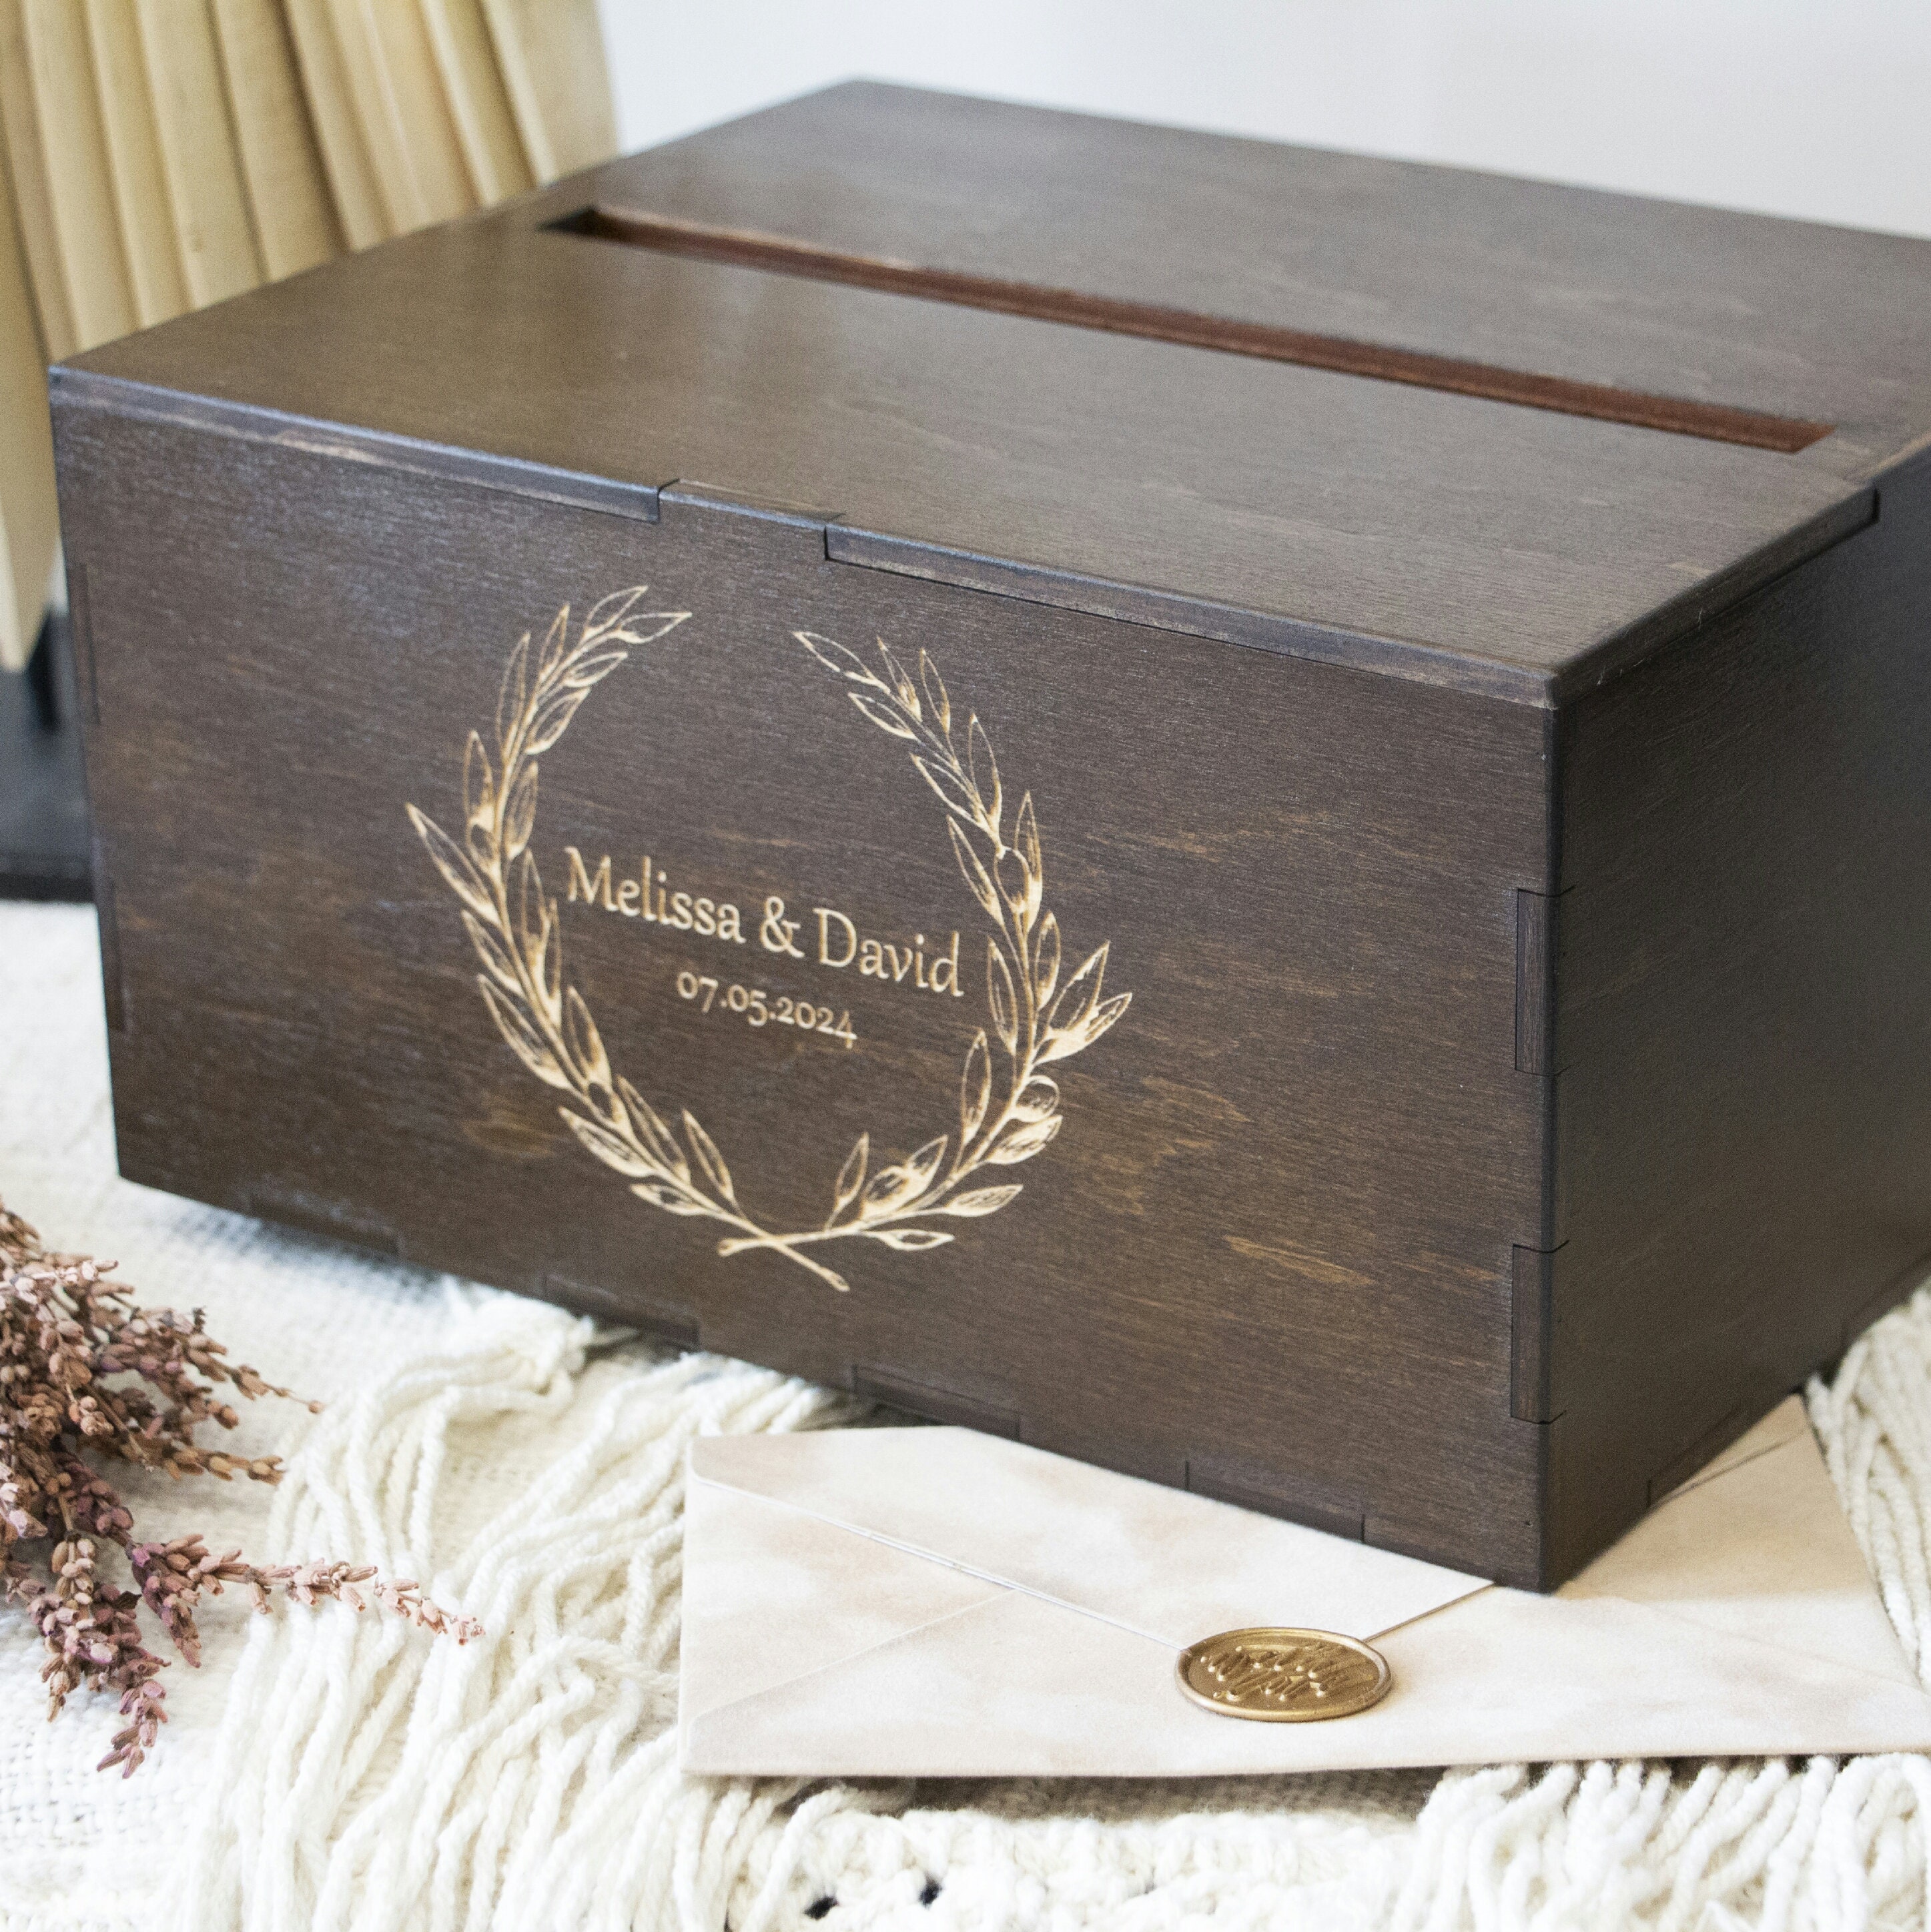 FixtureDisplays Diy Wedding Card Box Rustic Wood Card Box Gift